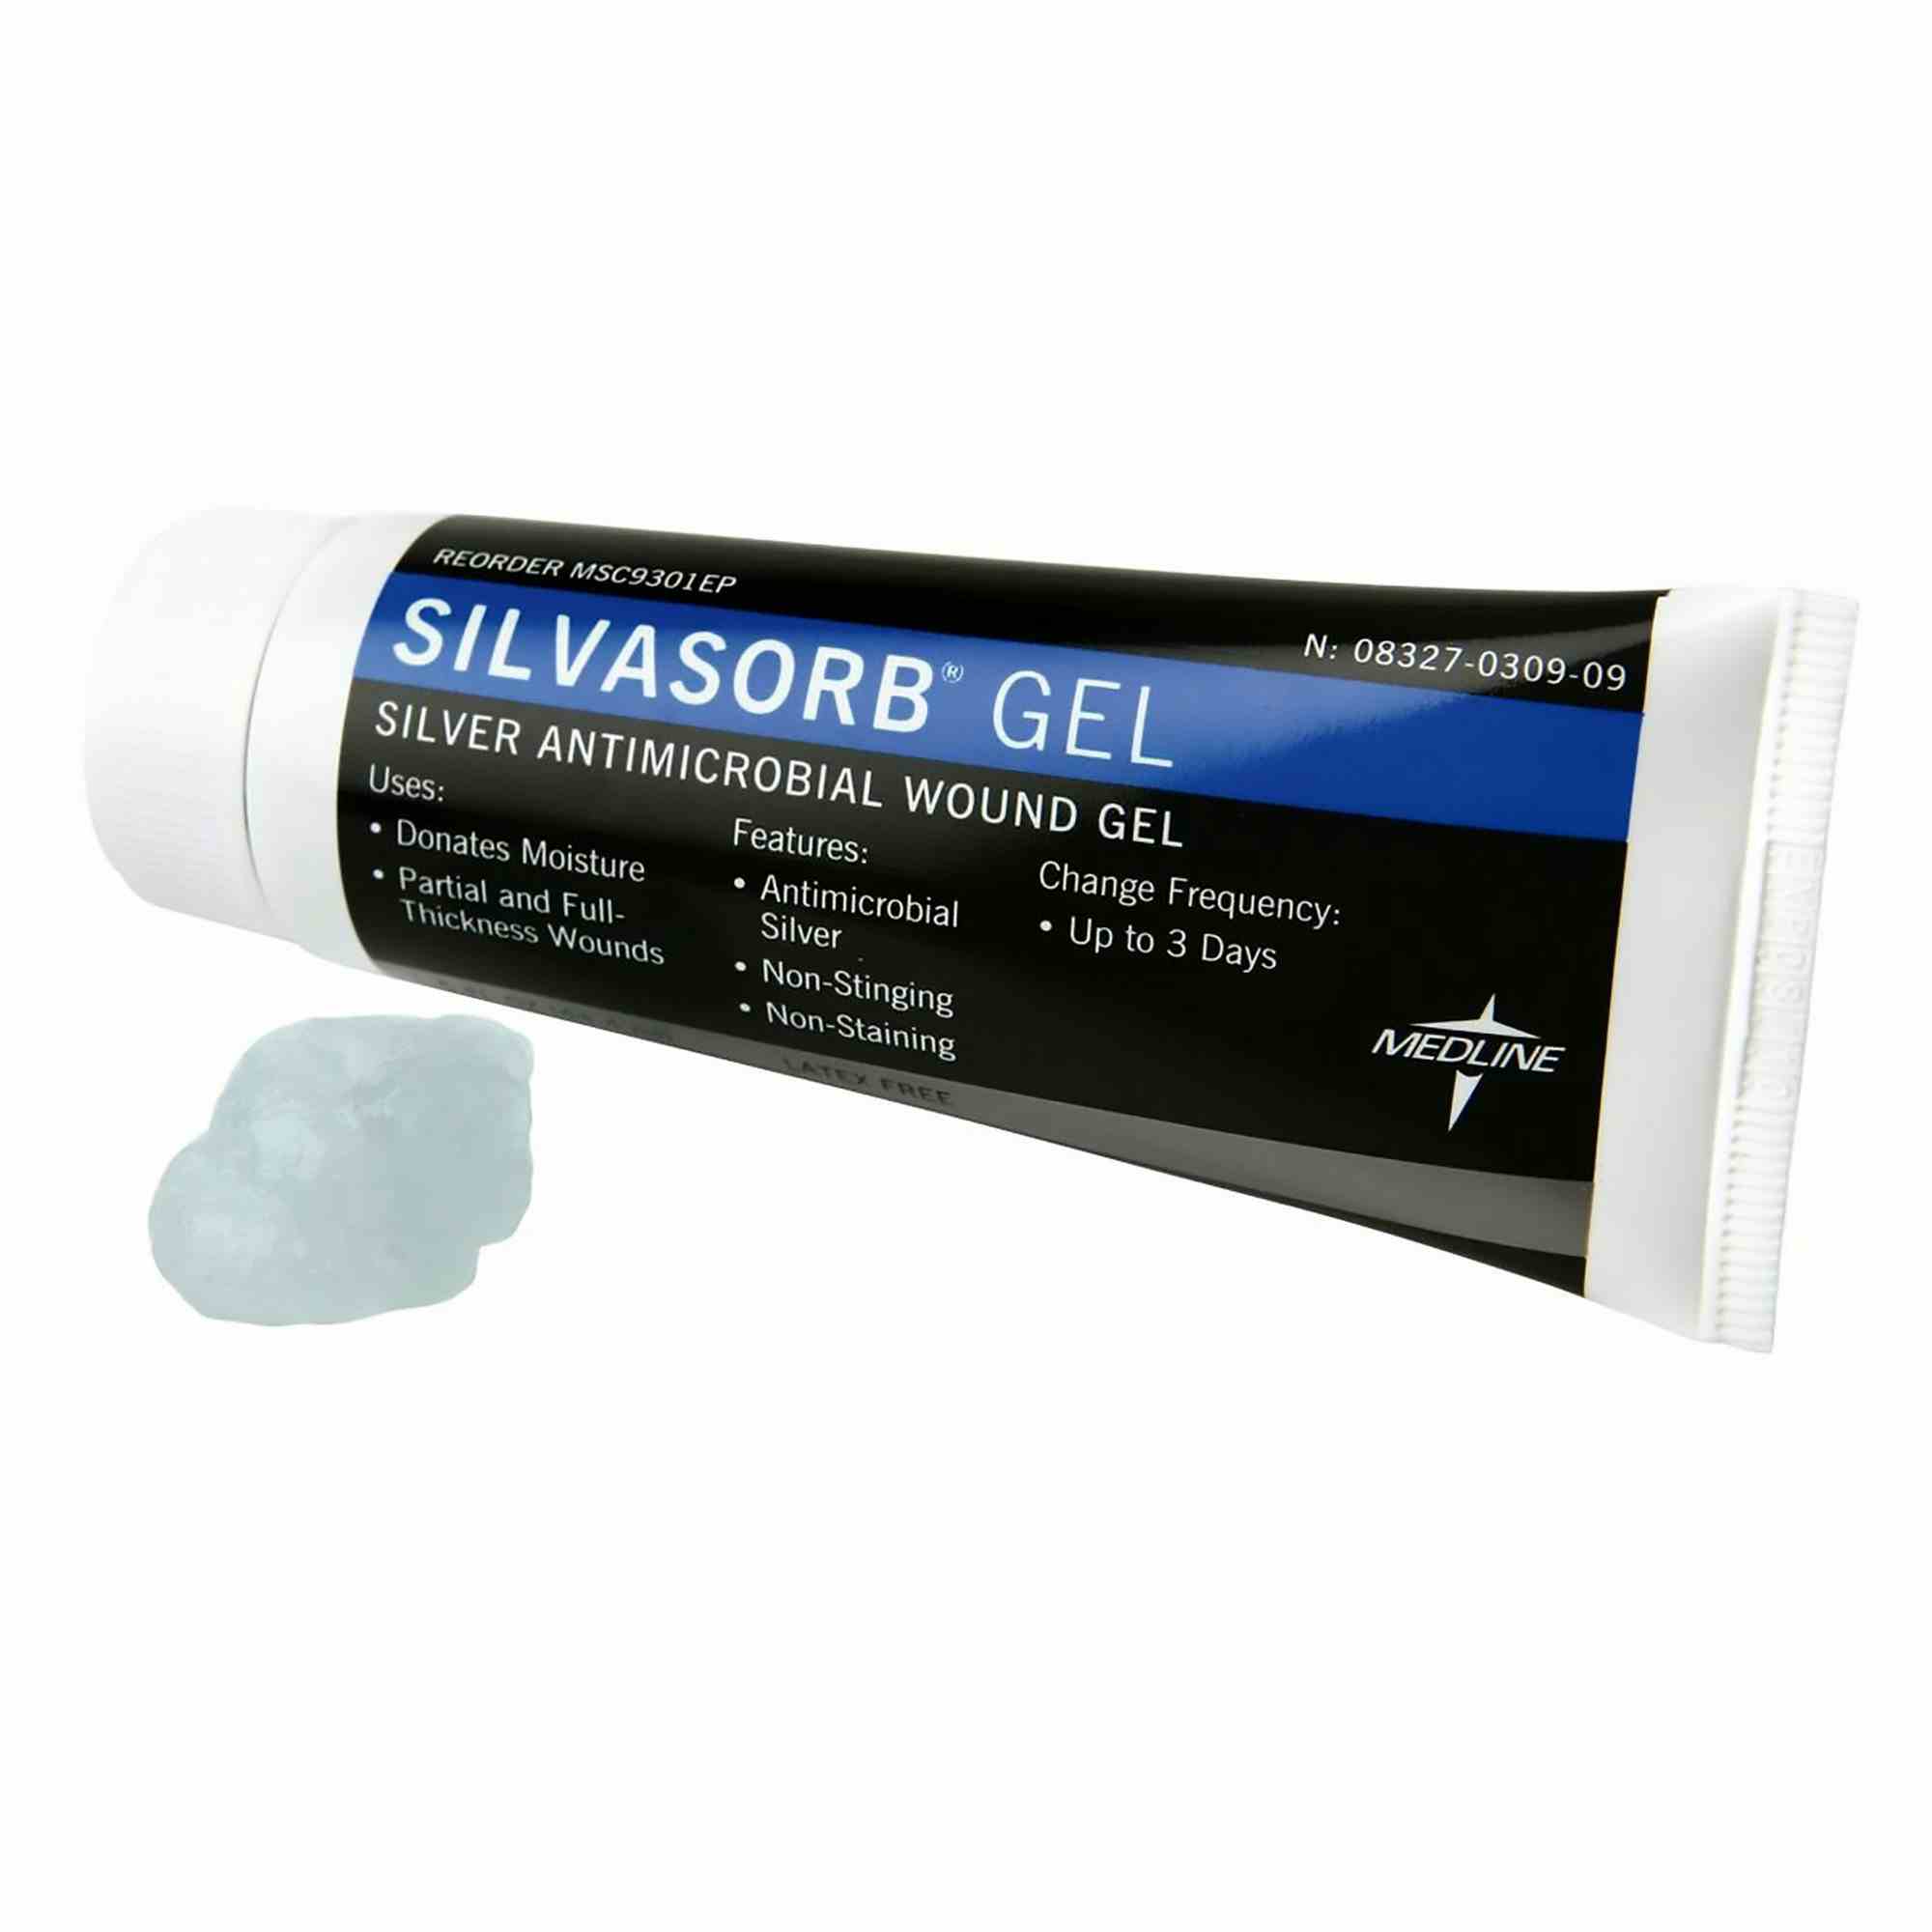 Medline Silvasorb Gel Silver Antimicrobial Wound Gel, MSC9301EP, 1.5 oz. - 1 Each